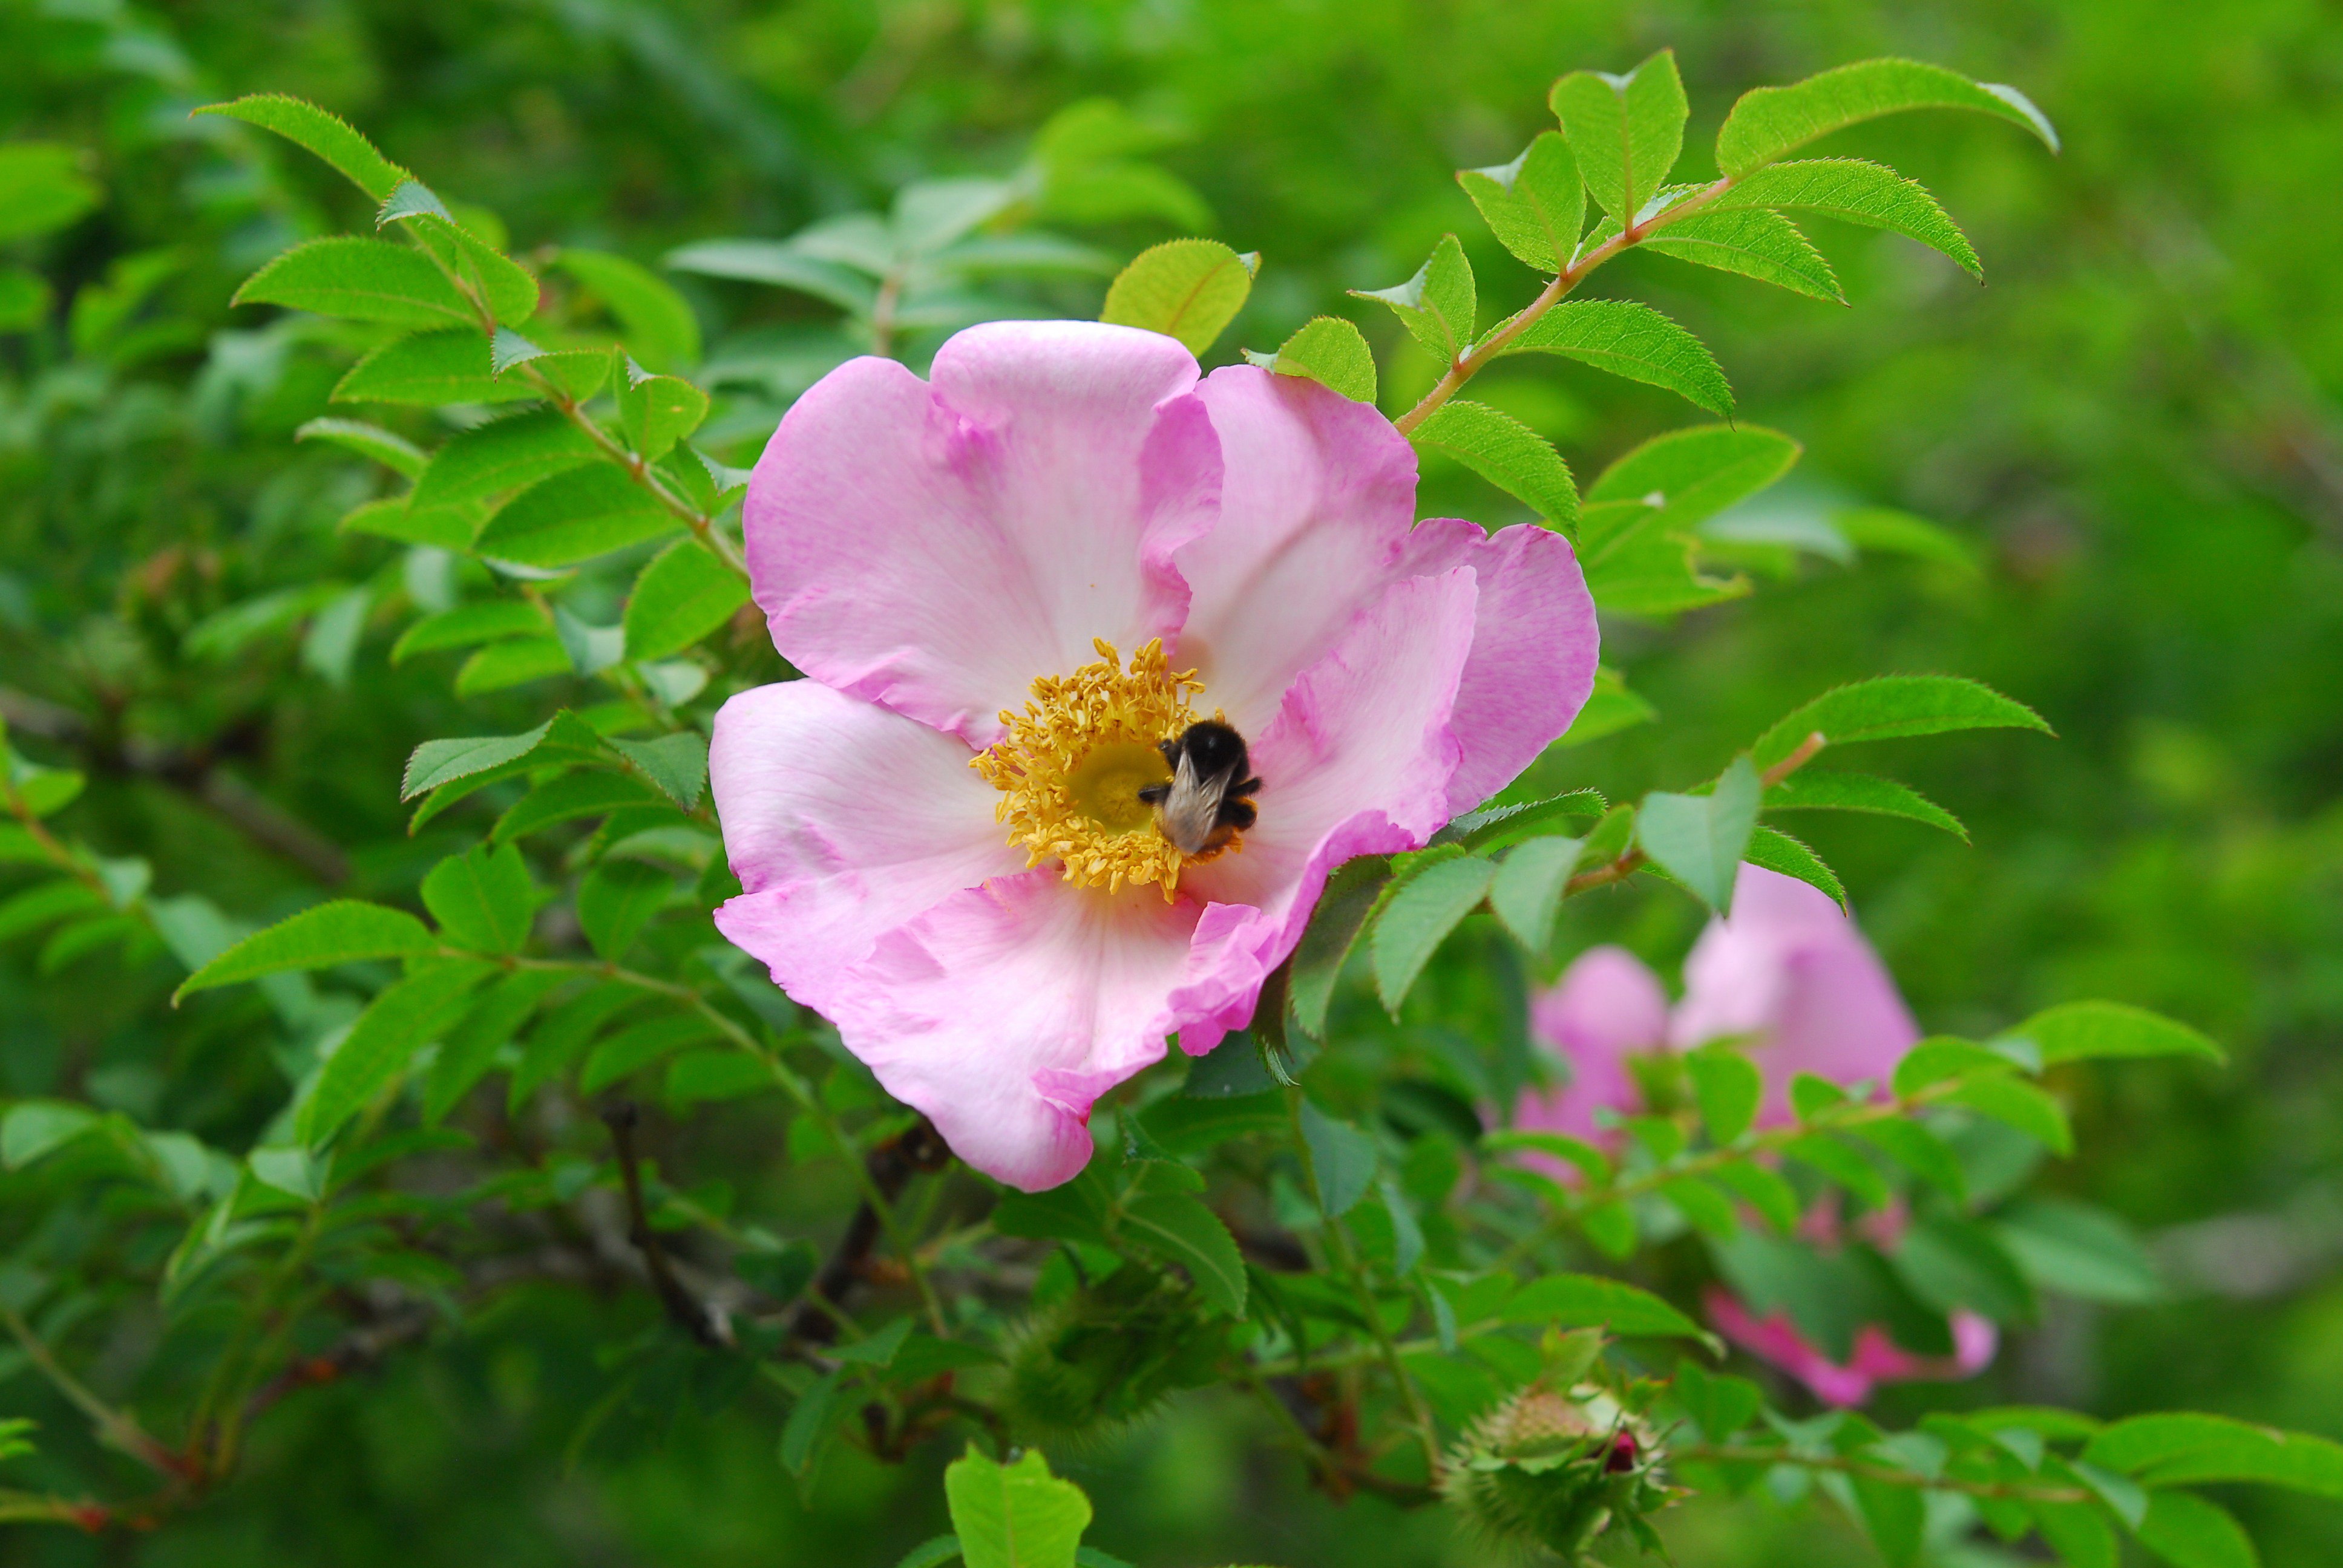 六甲高山植物園 バラの仲間いろいろ咲いています 桃色の花は サンショウバラ 葉っぱがサンショウの葉に似ているのでサンショウバラ サンショウの香りはしません 蜂たちが新しい花に続々と飛んできます 白とピンクの花は ハマナス の花 北国の